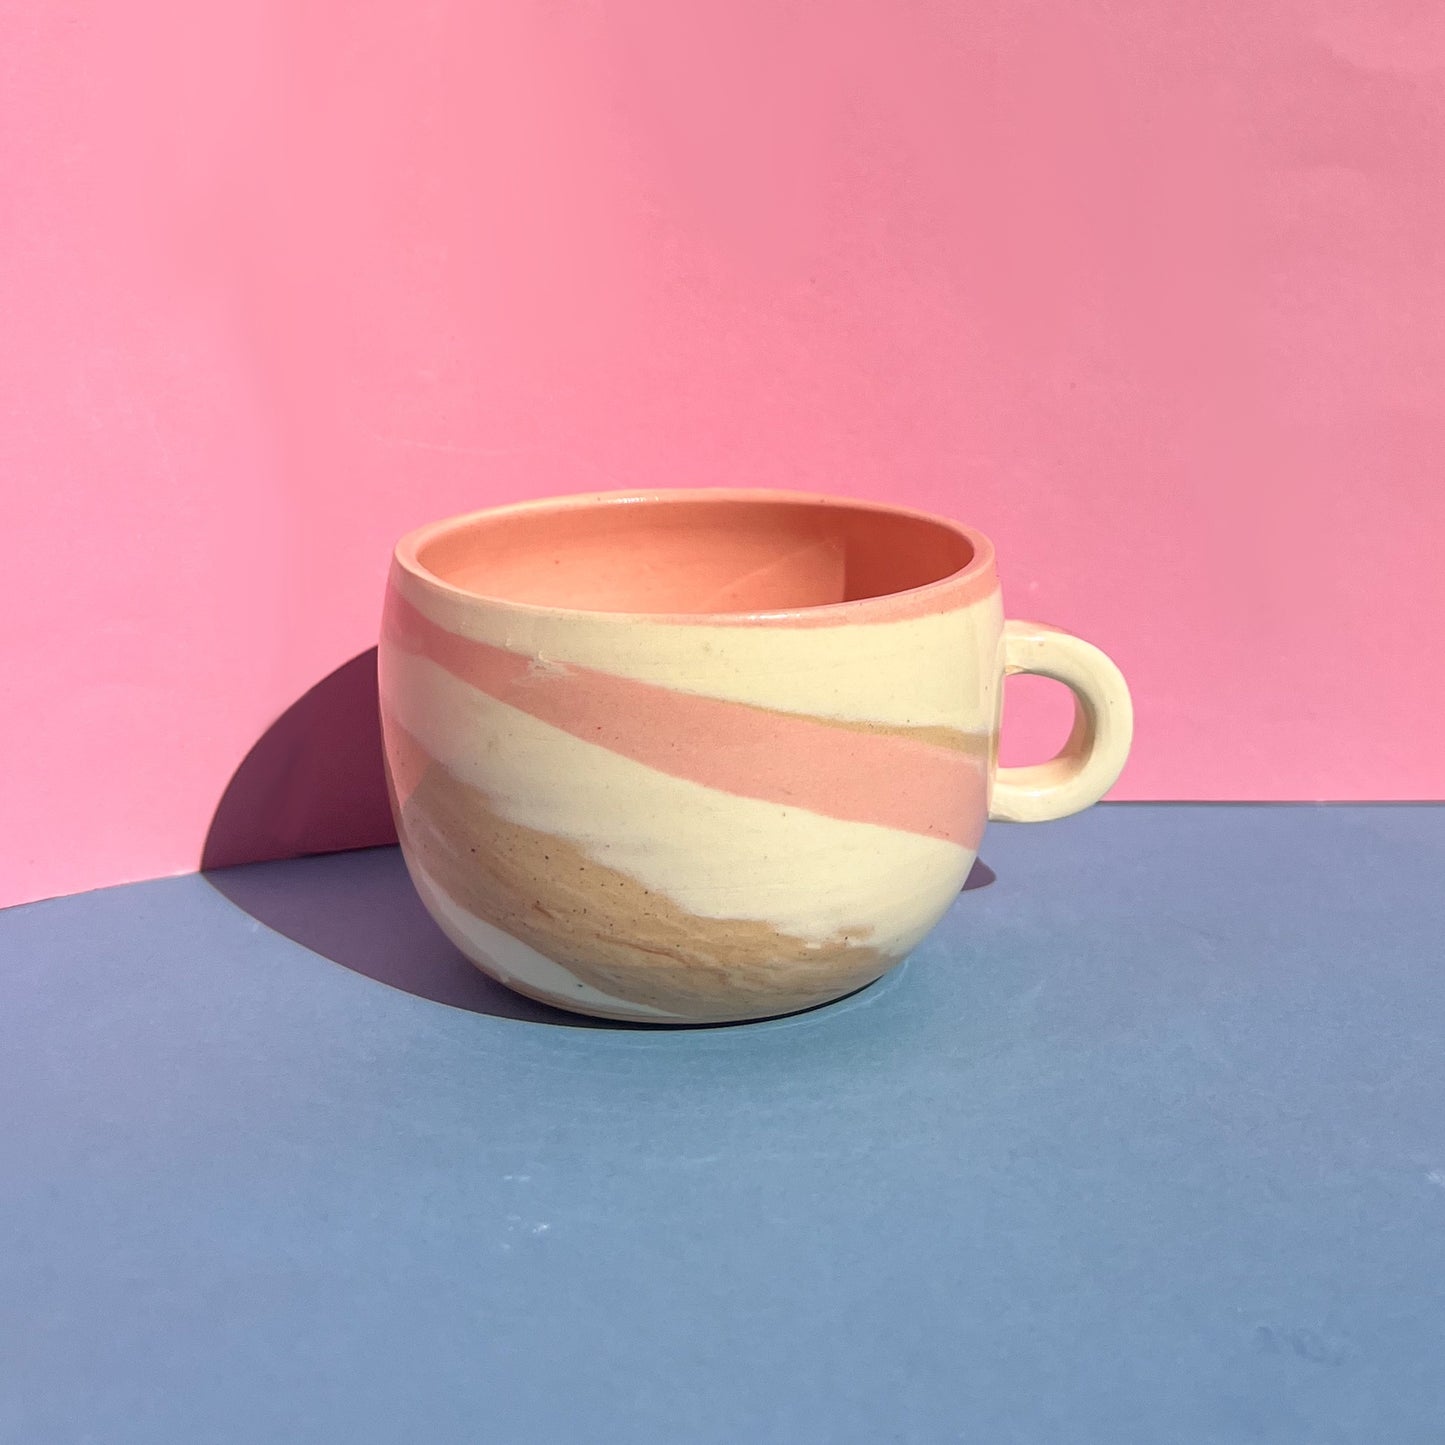 Mini espresso mug :)